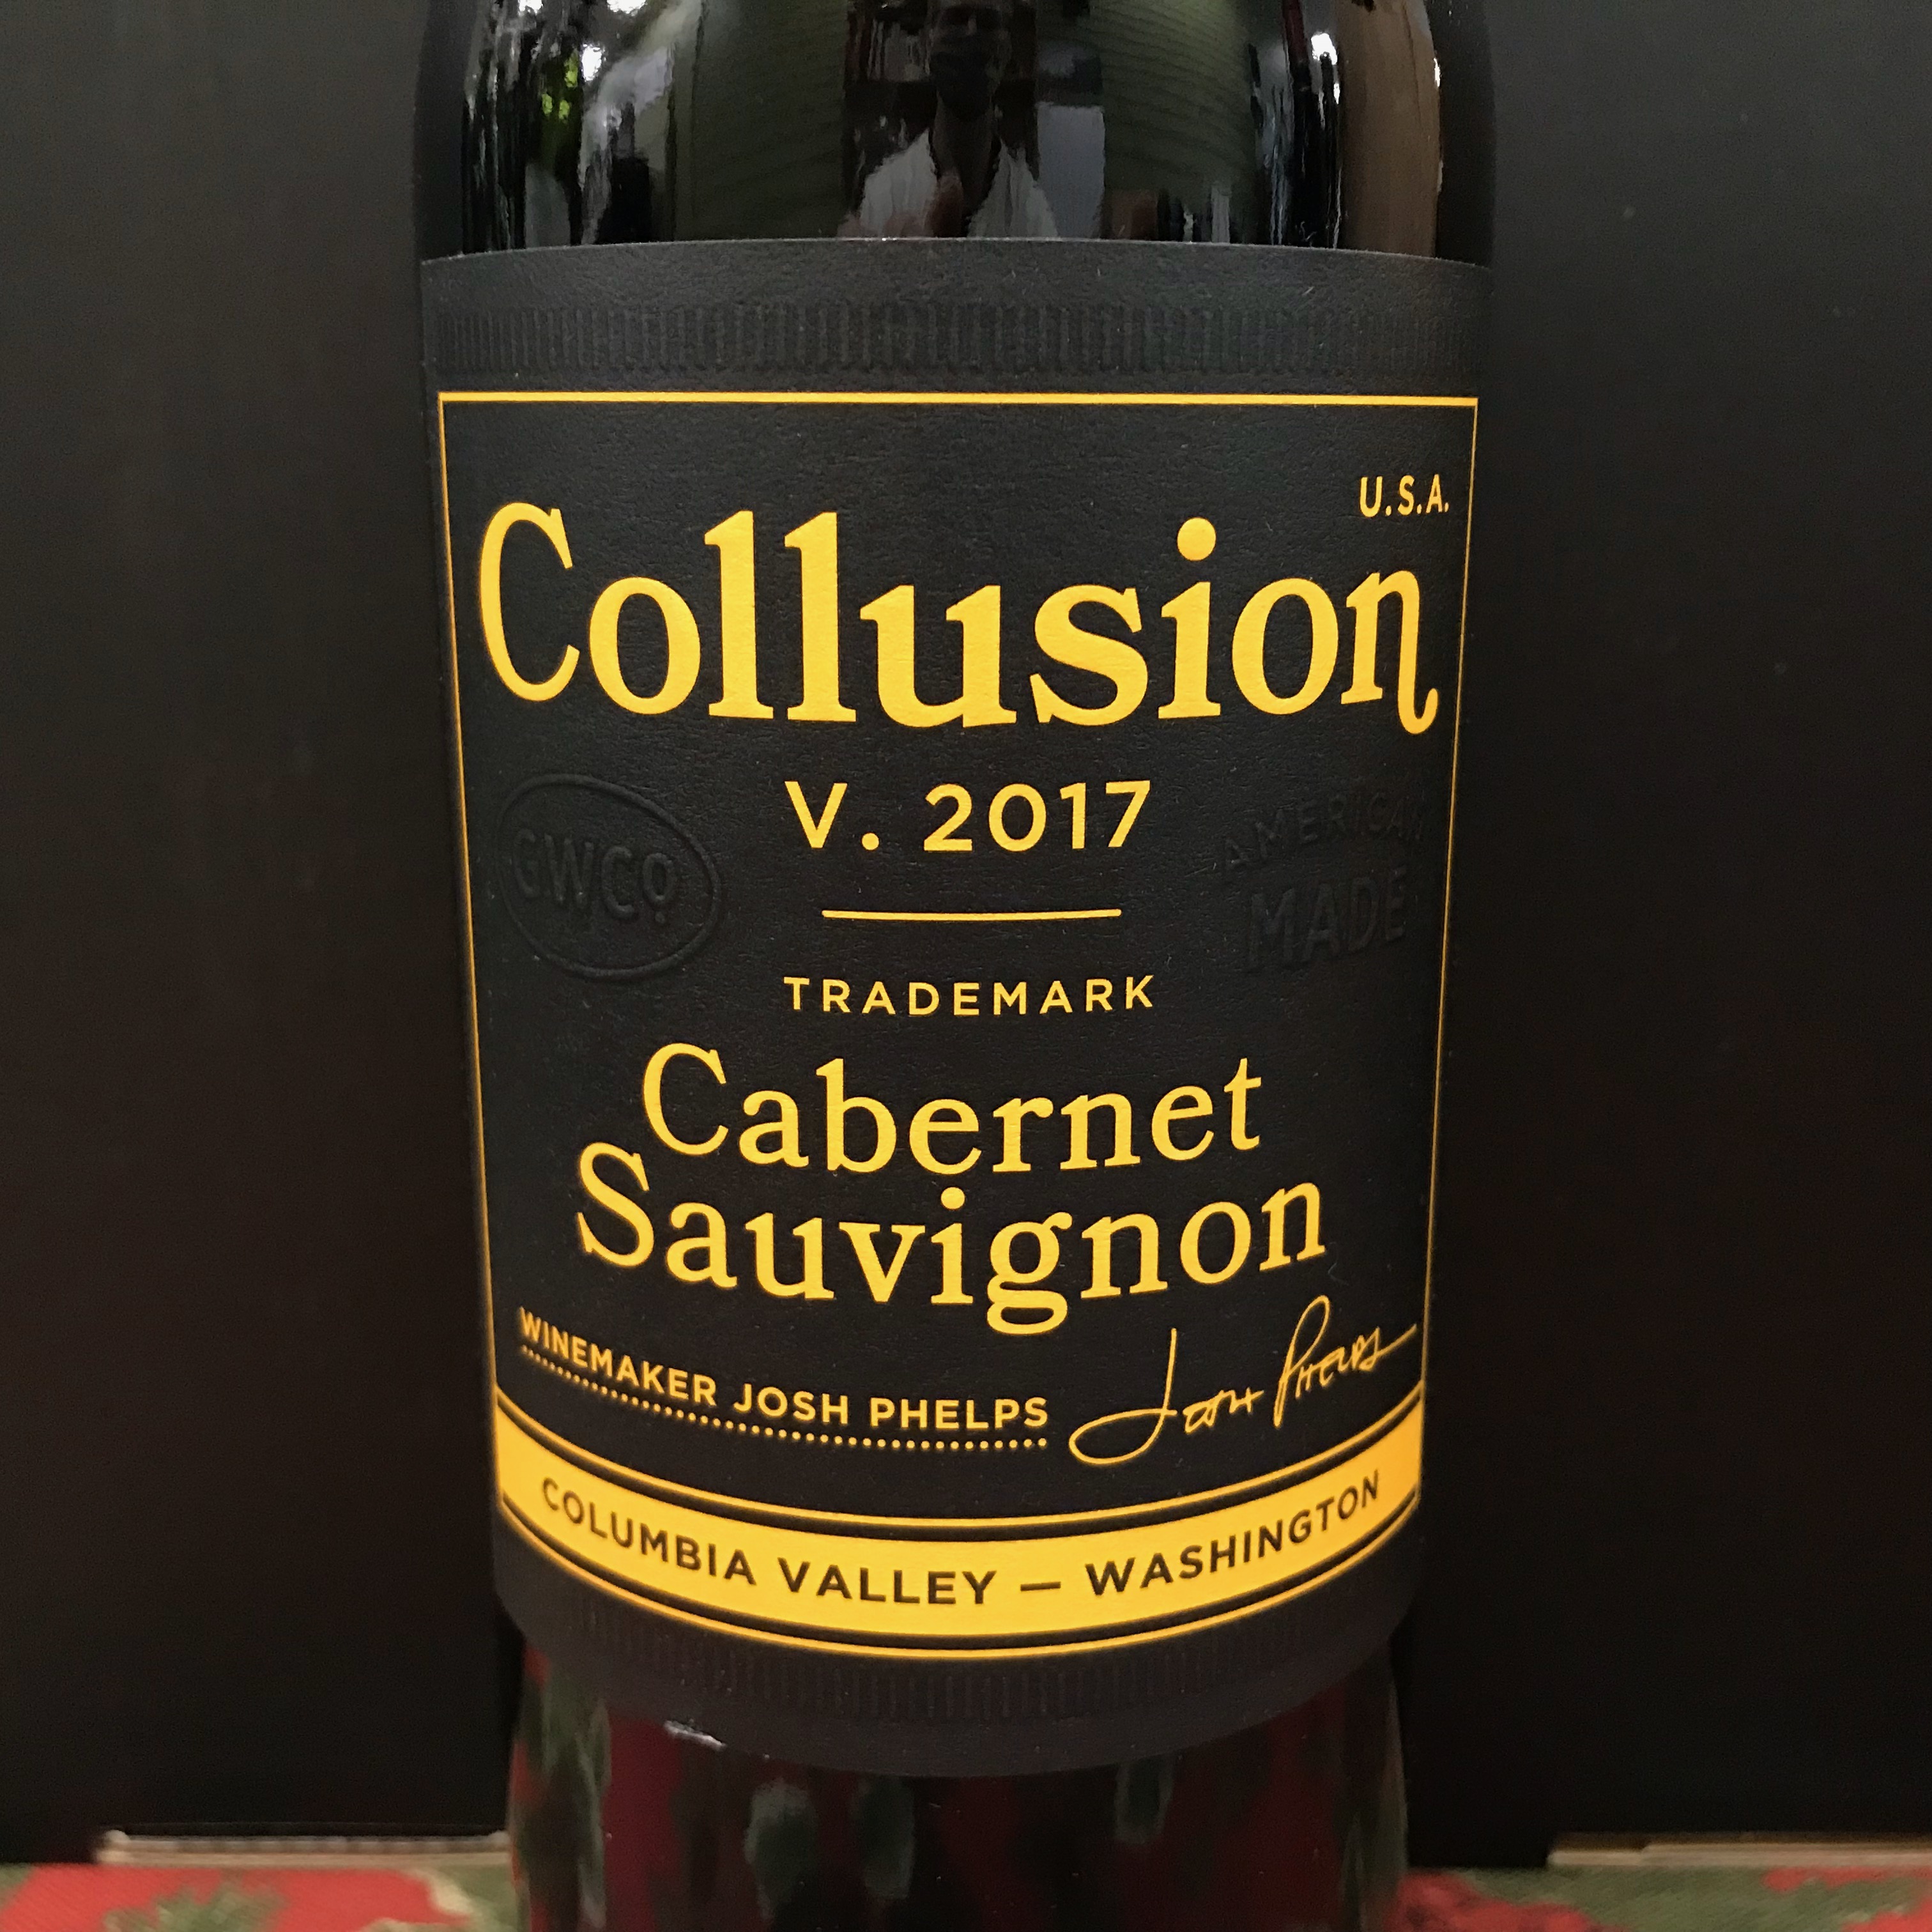 Collusion Cabernet Sauvignon trademark 2017